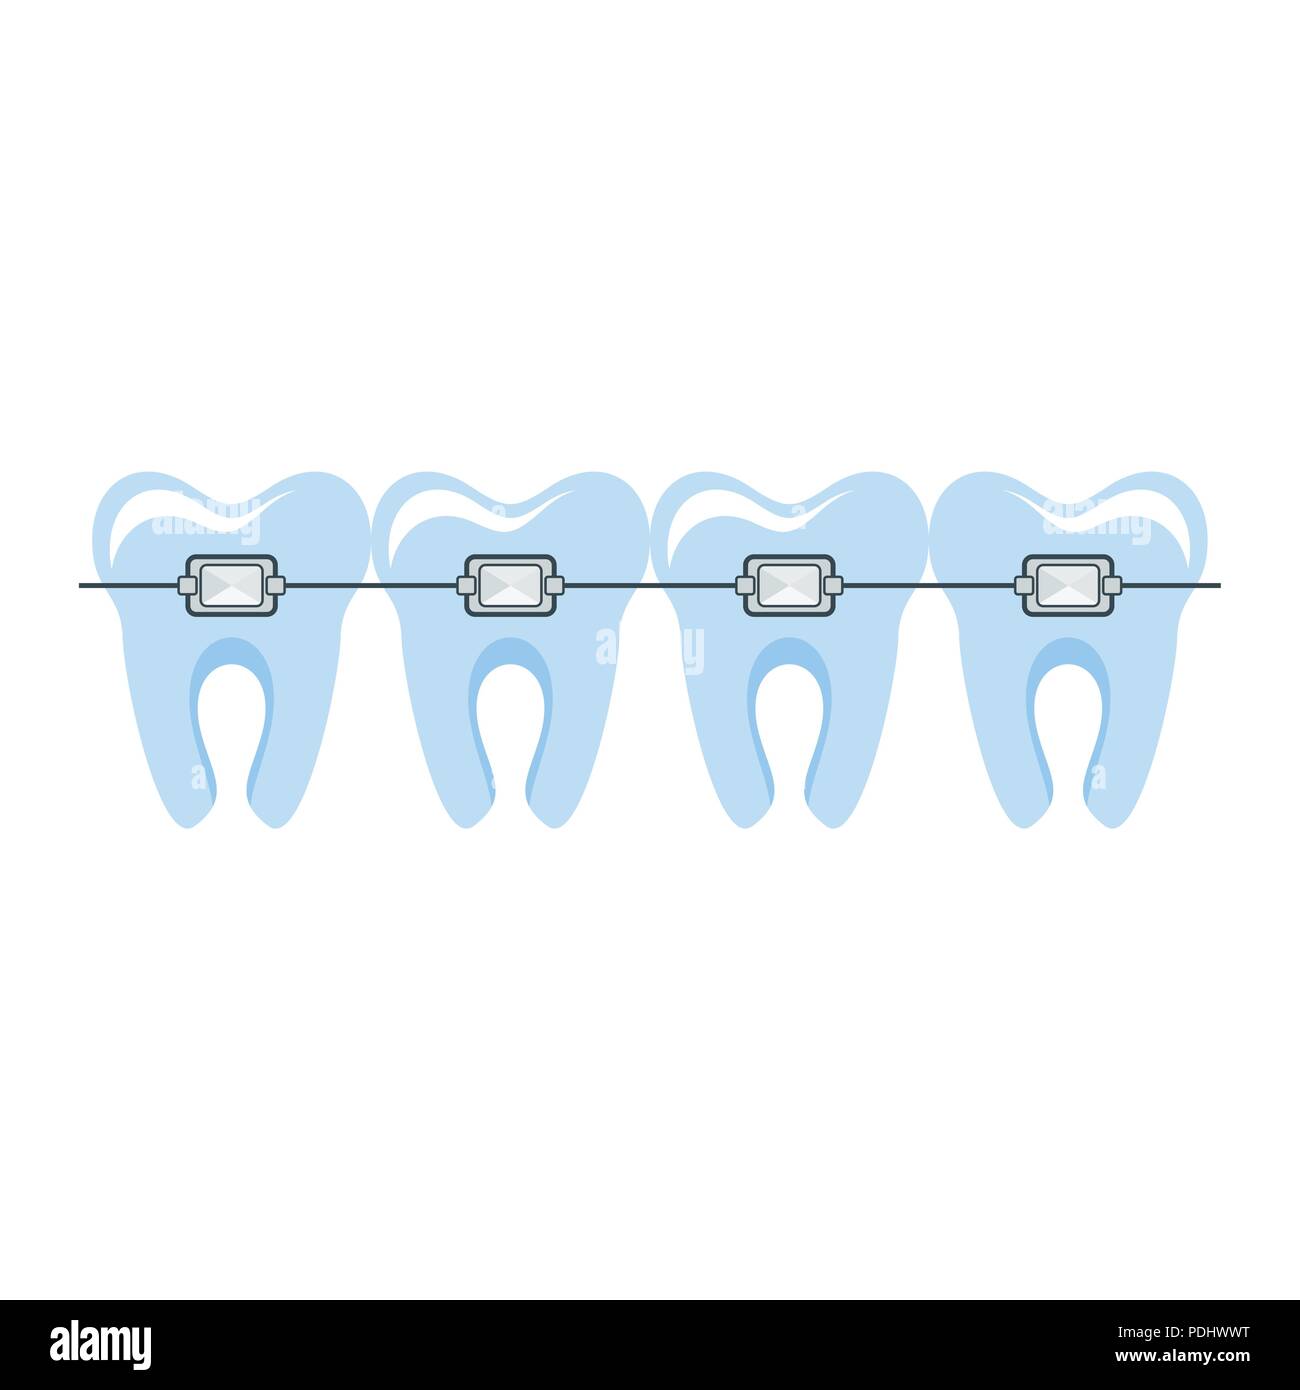 Gesund gepflegte Zähne in geschweiften Klammern. Zahn- und Mundpflege Stock Vektor